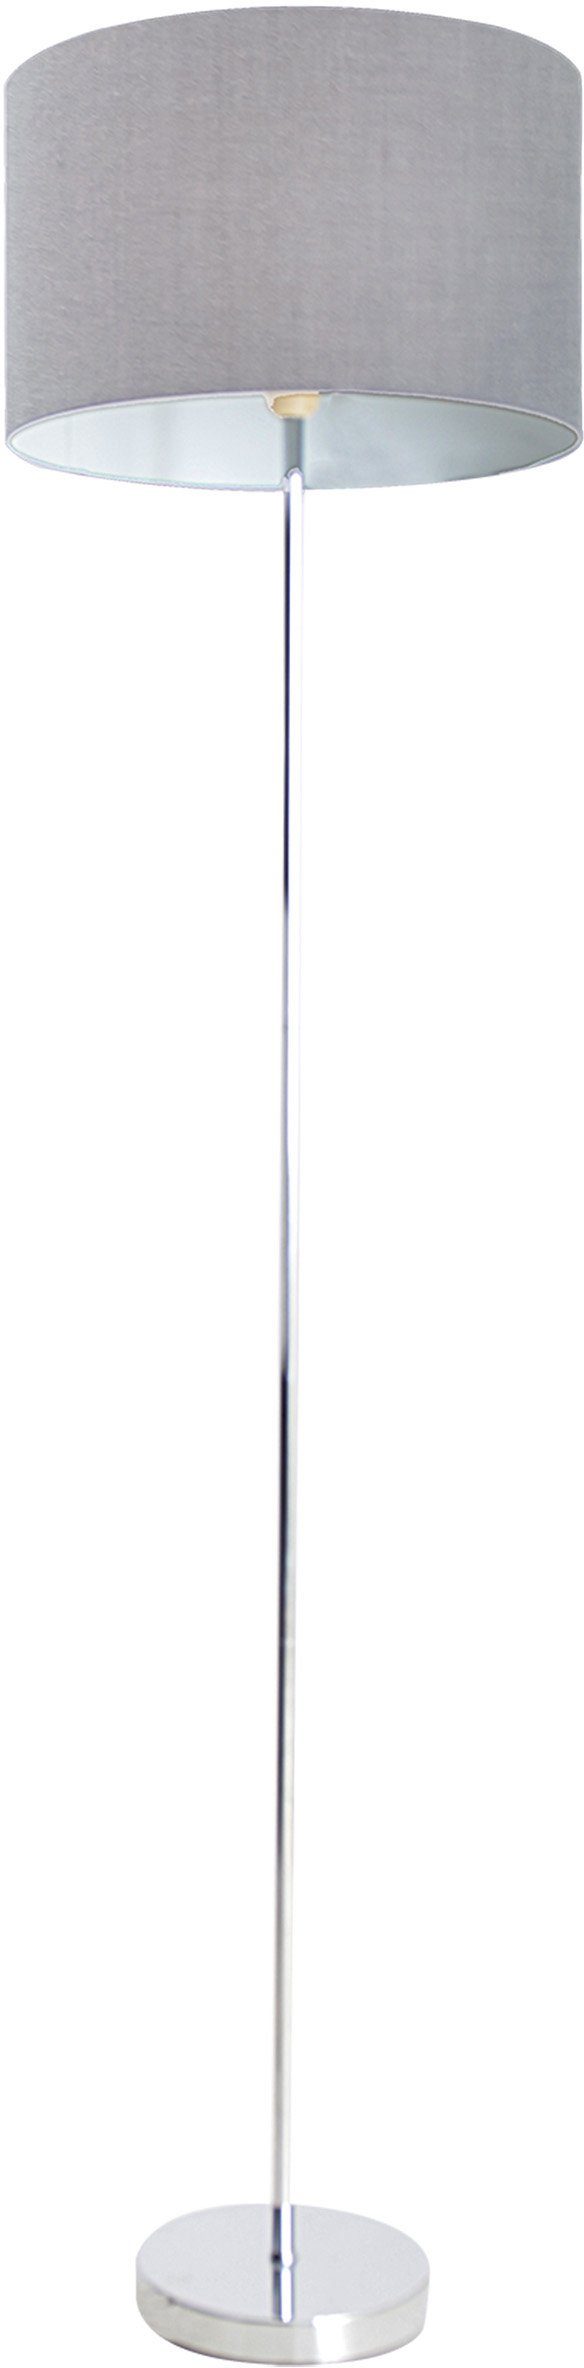 E27 näve chrom max Durchmesser Stehlampe New ohne 160cm Gestell 40W Höhe grau 34,5cm Schirm Leuchtmittel, 1x York,